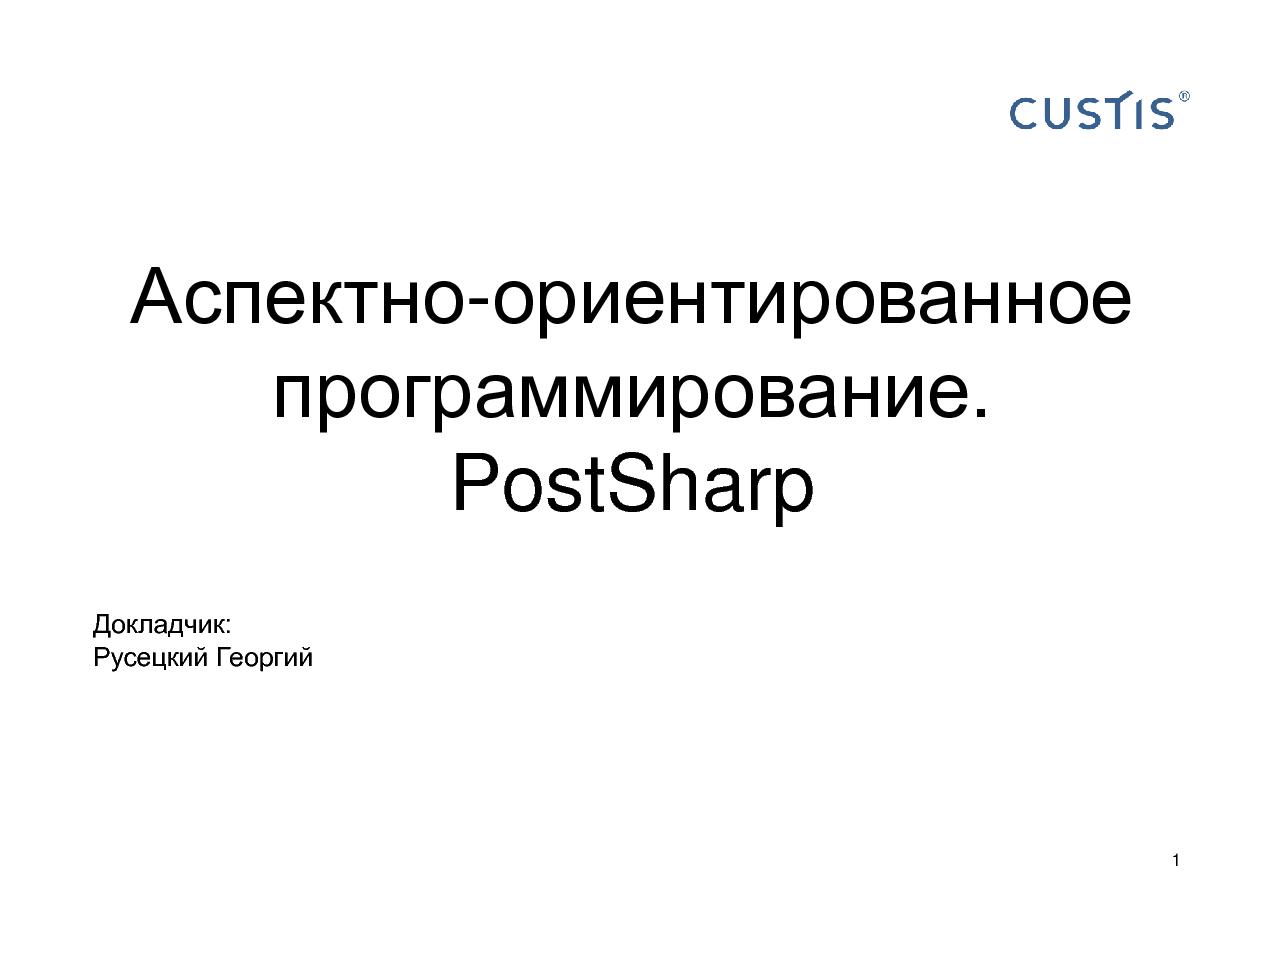 Аспектно-ориентированное программирование. PostSharp. (семинар 2011-05-12, для студентов).pdf